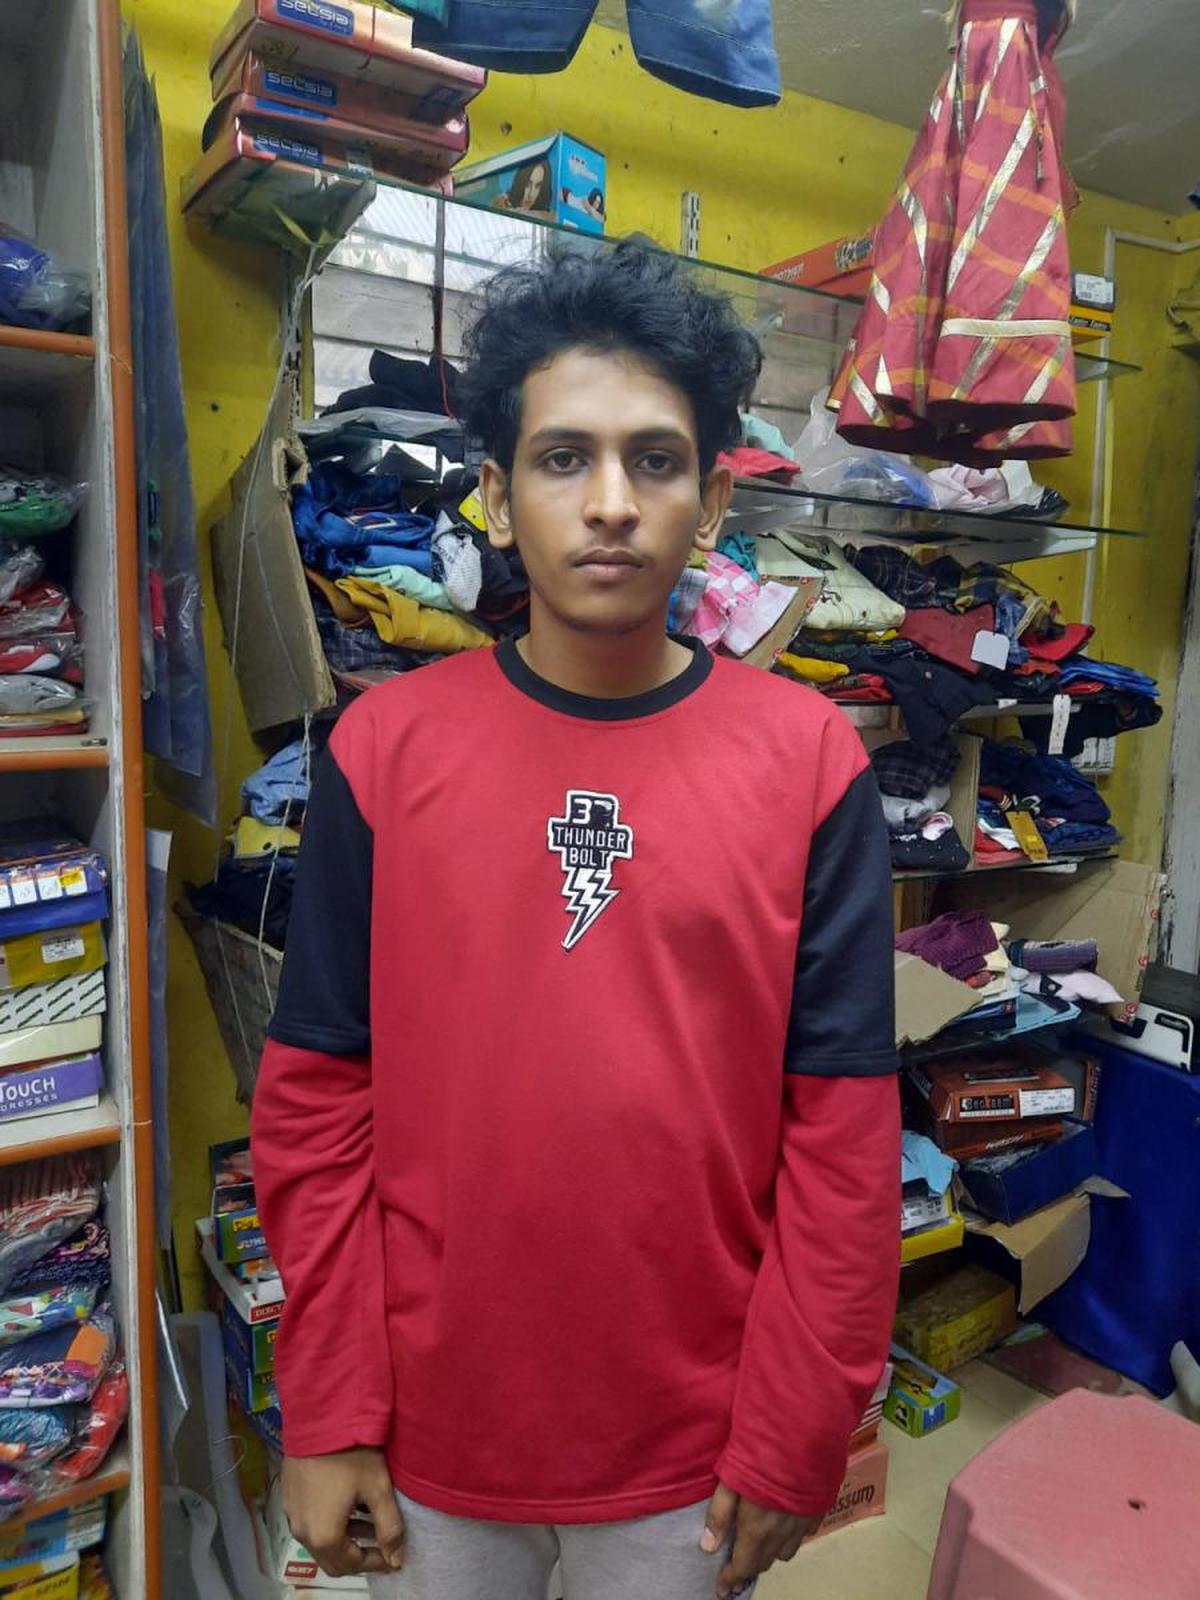 मोहम्मद शरीक, 24, कथित बमवर्षक, जो 19 नवंबर, 2022 को मंगलुरु विस्फोट में ऑटोरिक्शा में था।